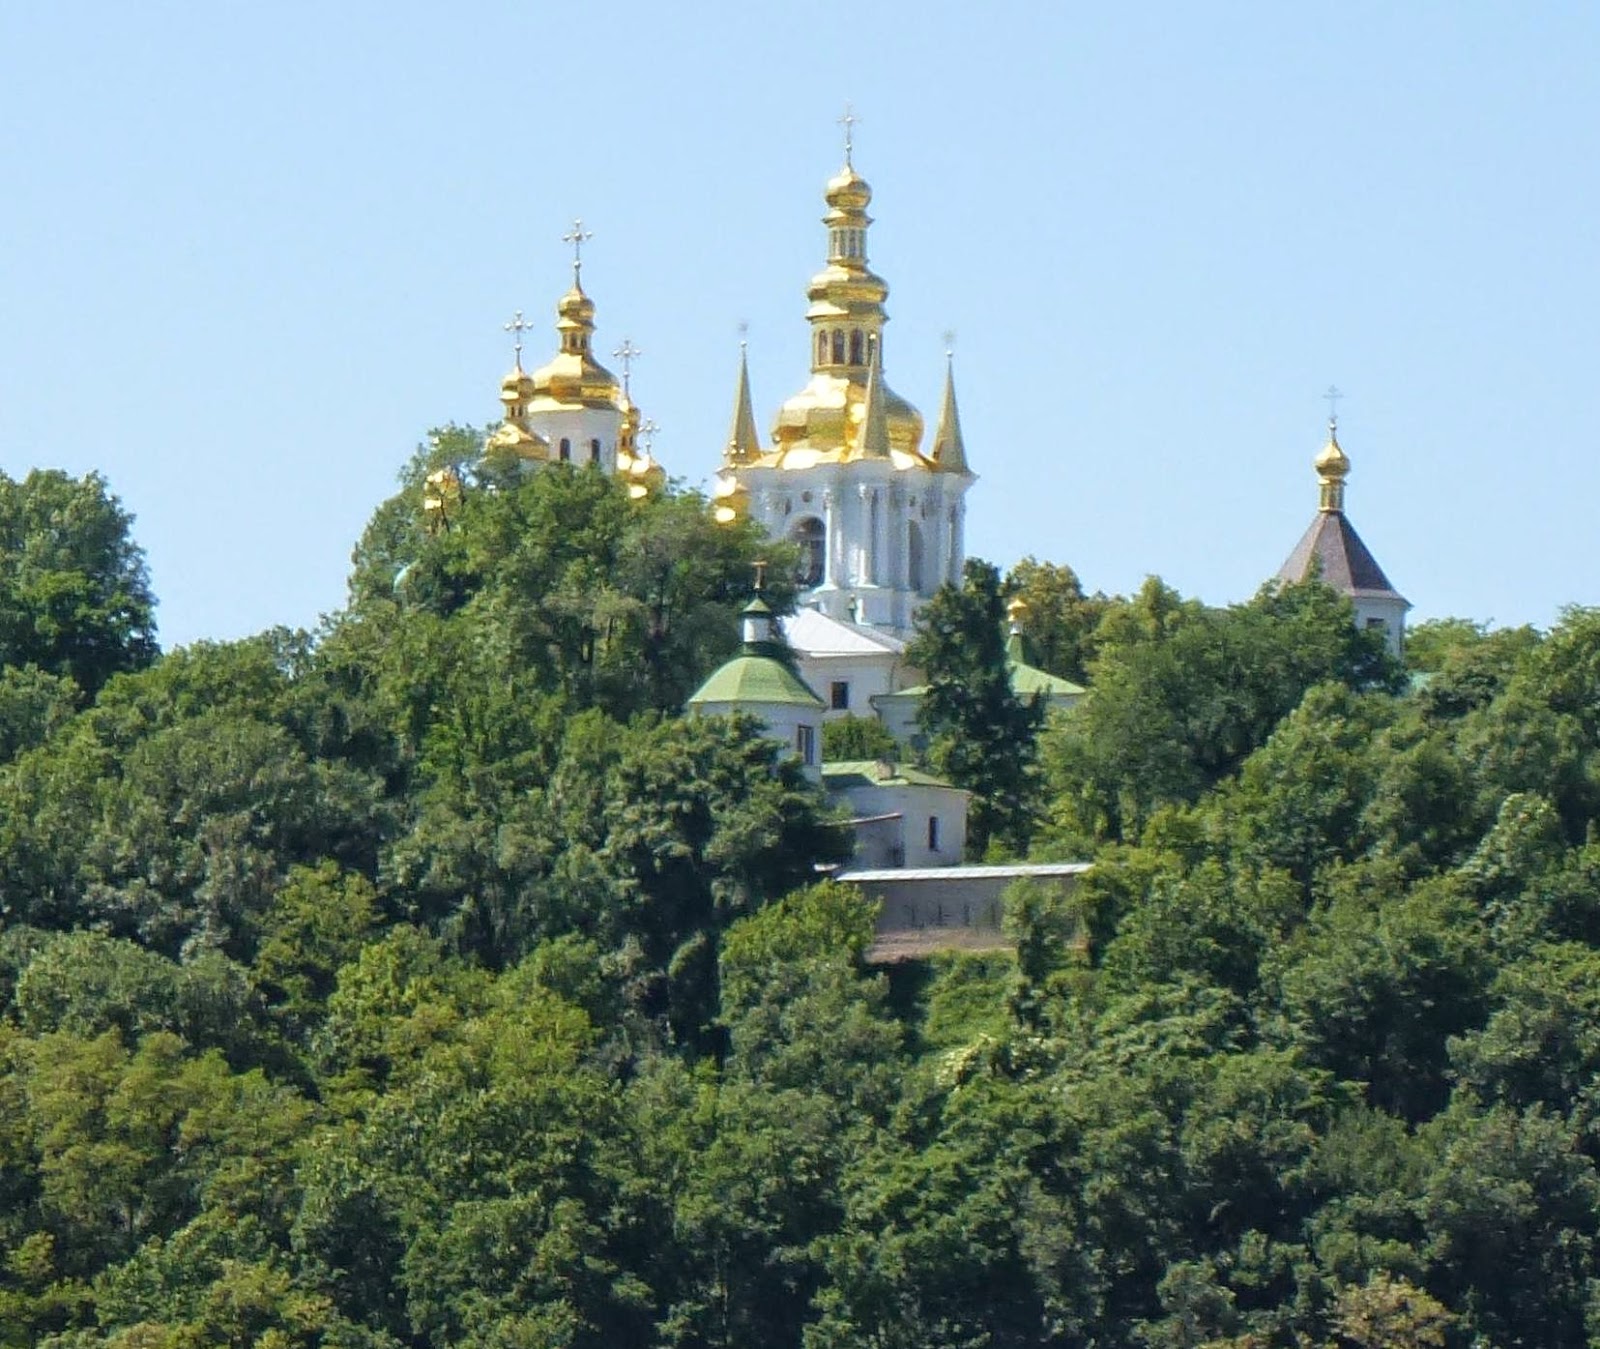 First view of Kiev; Lavra Monastery